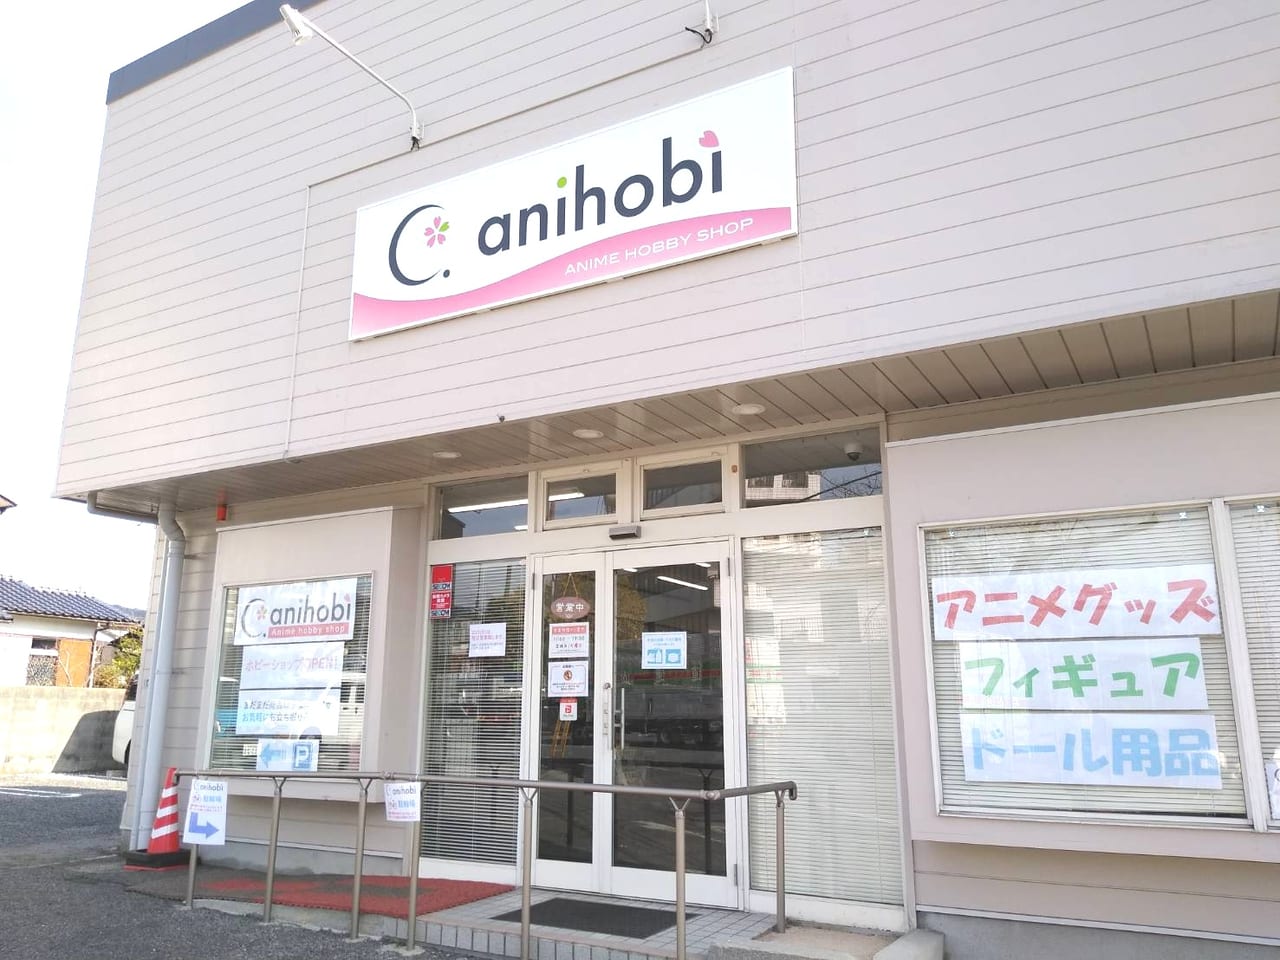 周南市 県内でも珍しいアニメグッズ専門店 Anihobi が周南市桜木にopen 号外net 周南市 下松市 光市